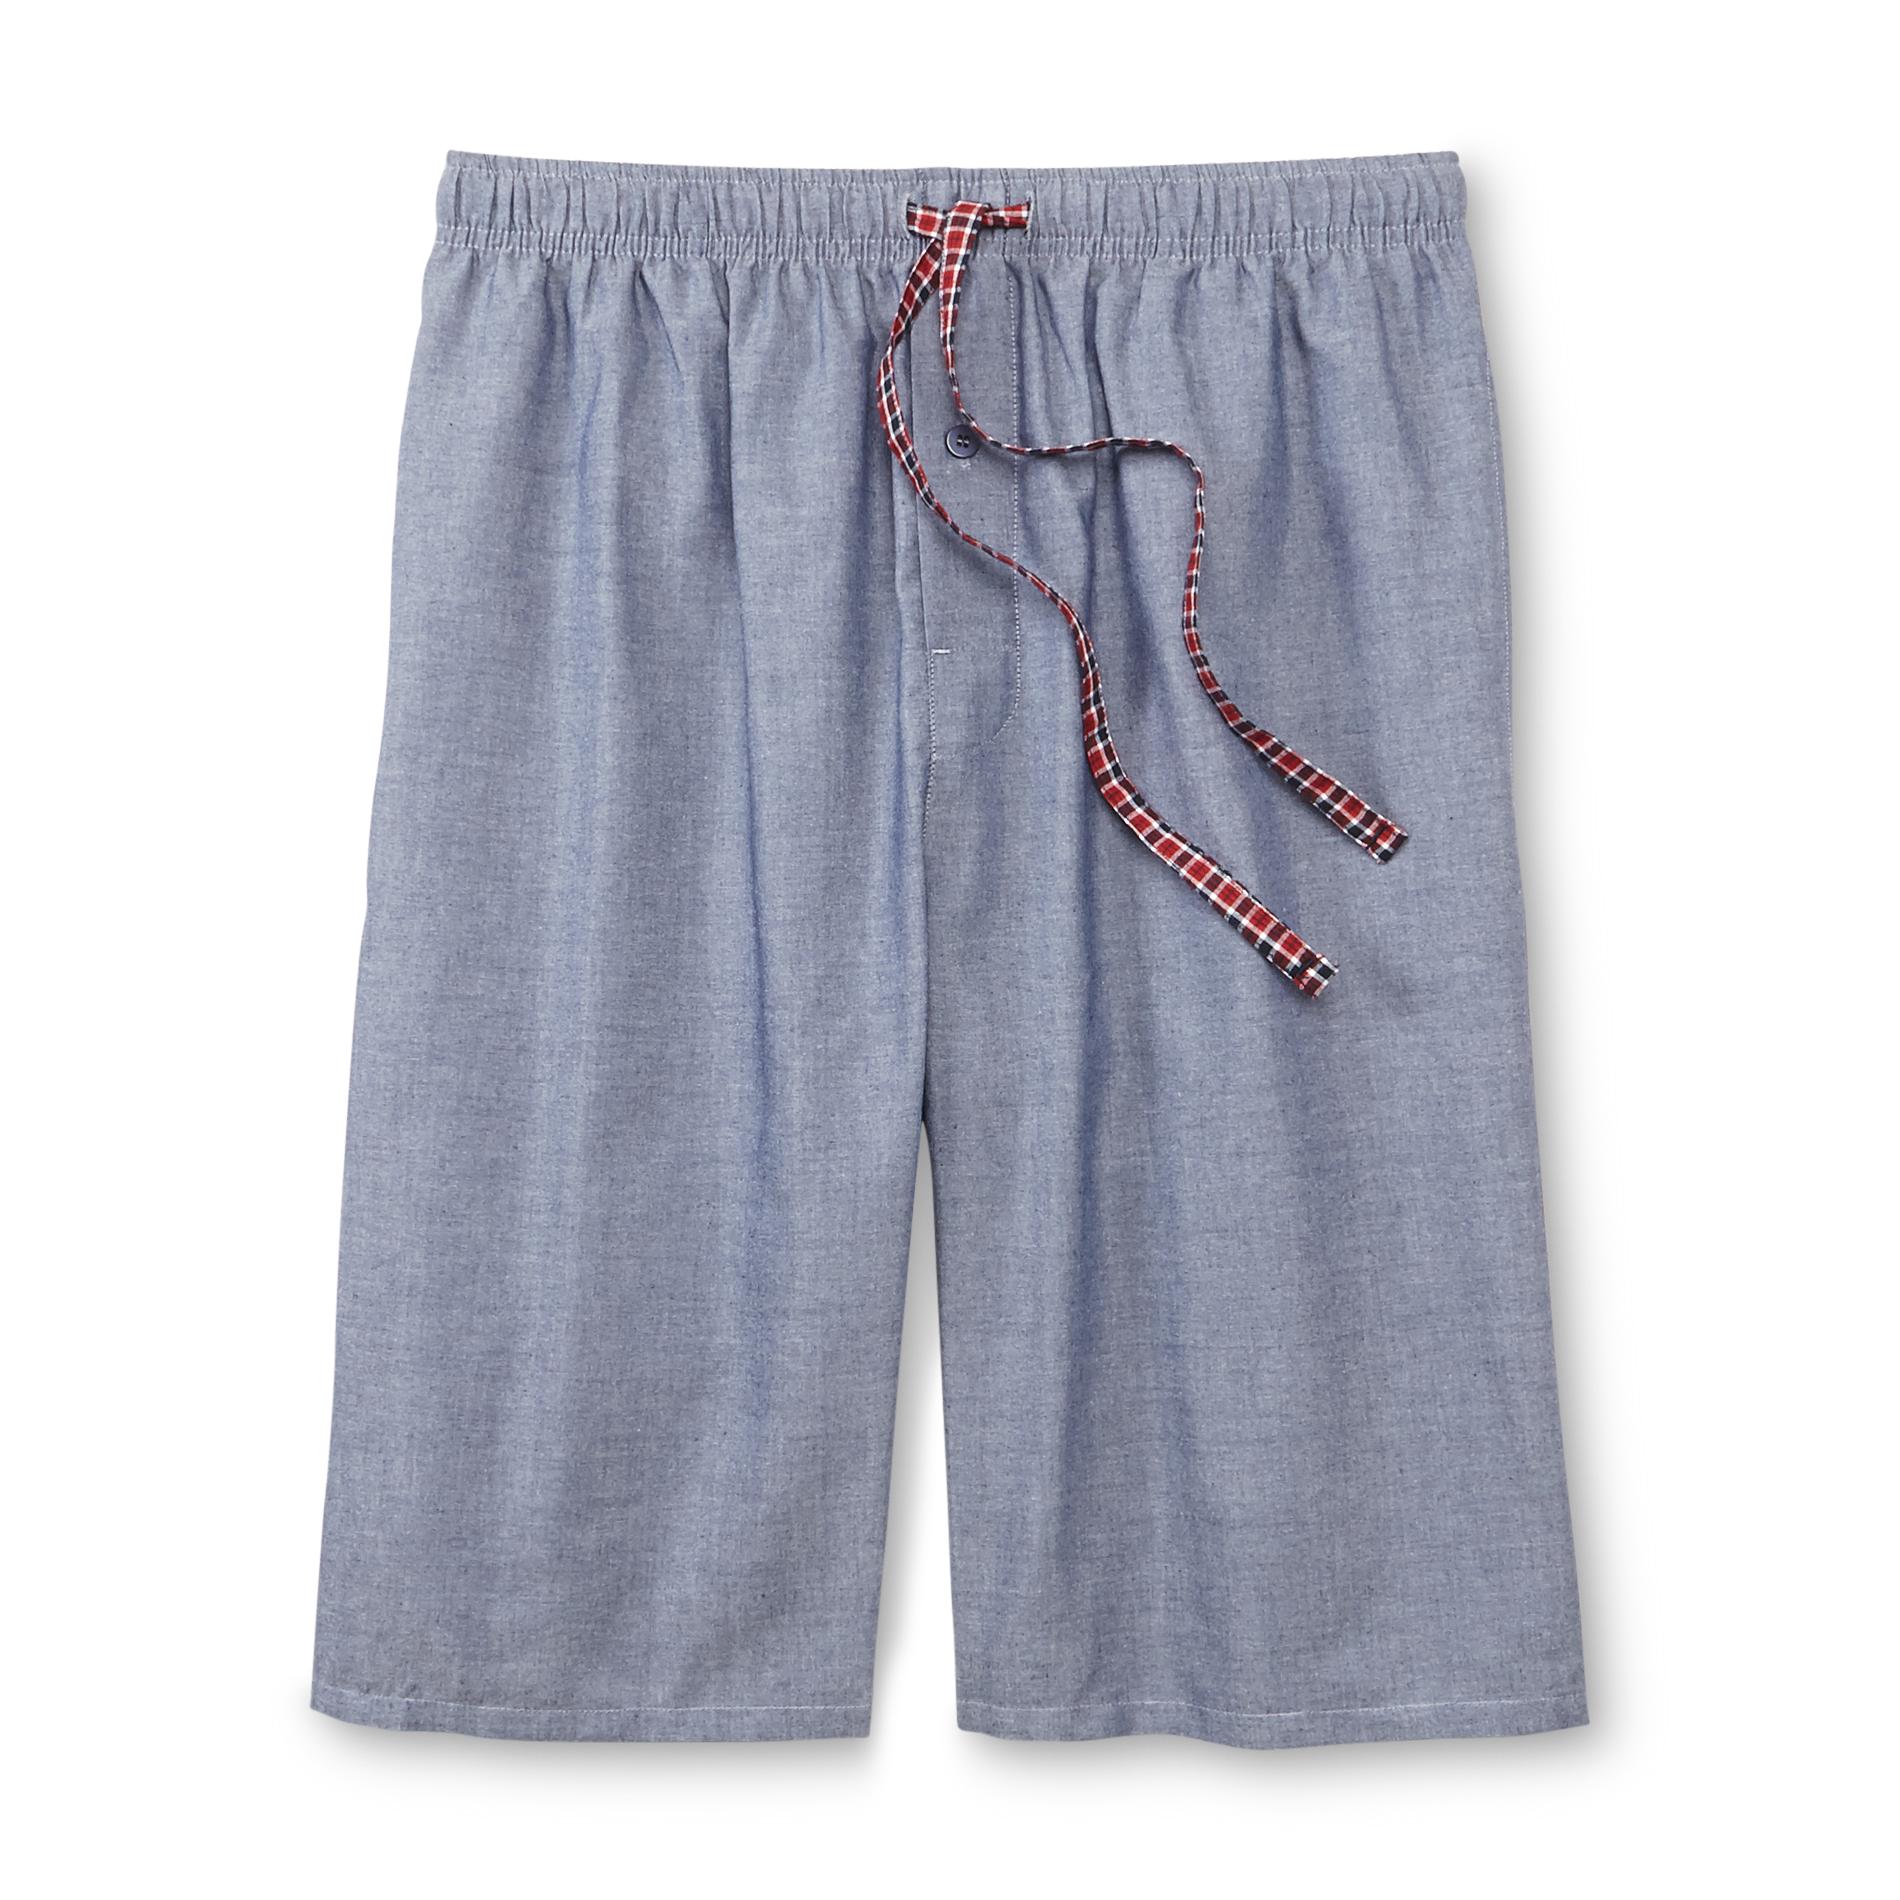 Basic Editions Men's Poplin Pajama Shorts